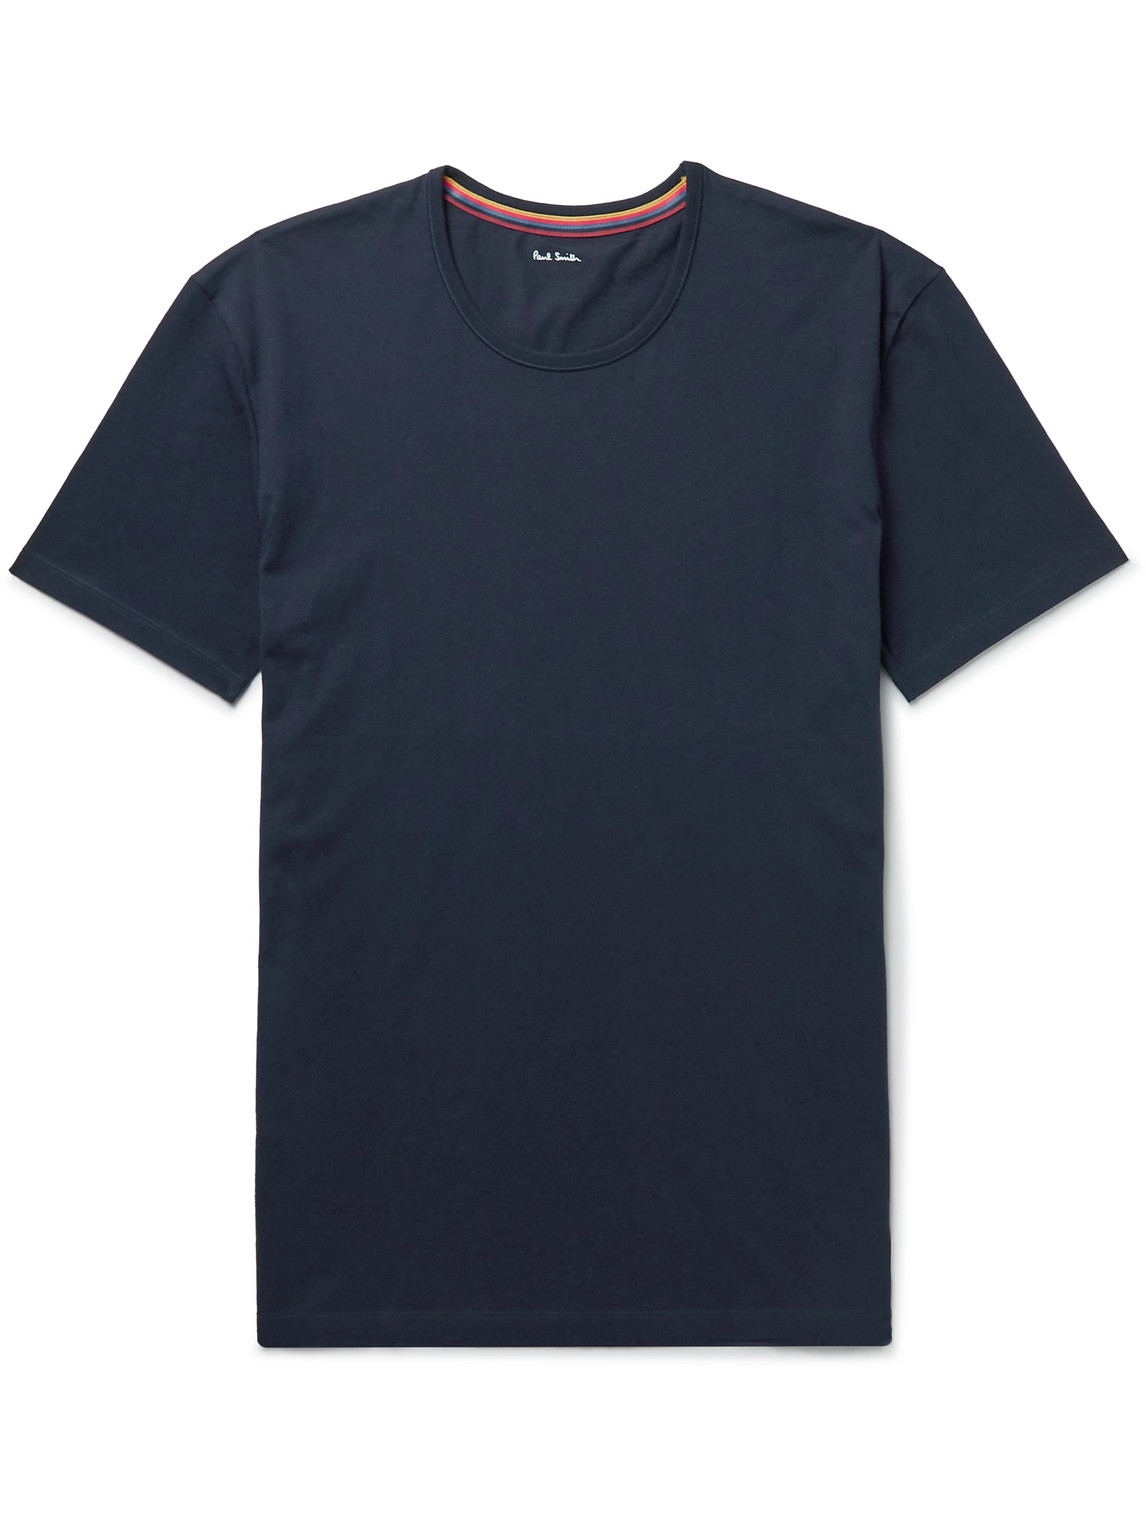 Paul Smith Slim-Fit Logo-Appliquéd Cotton-Jersey T-Shirt